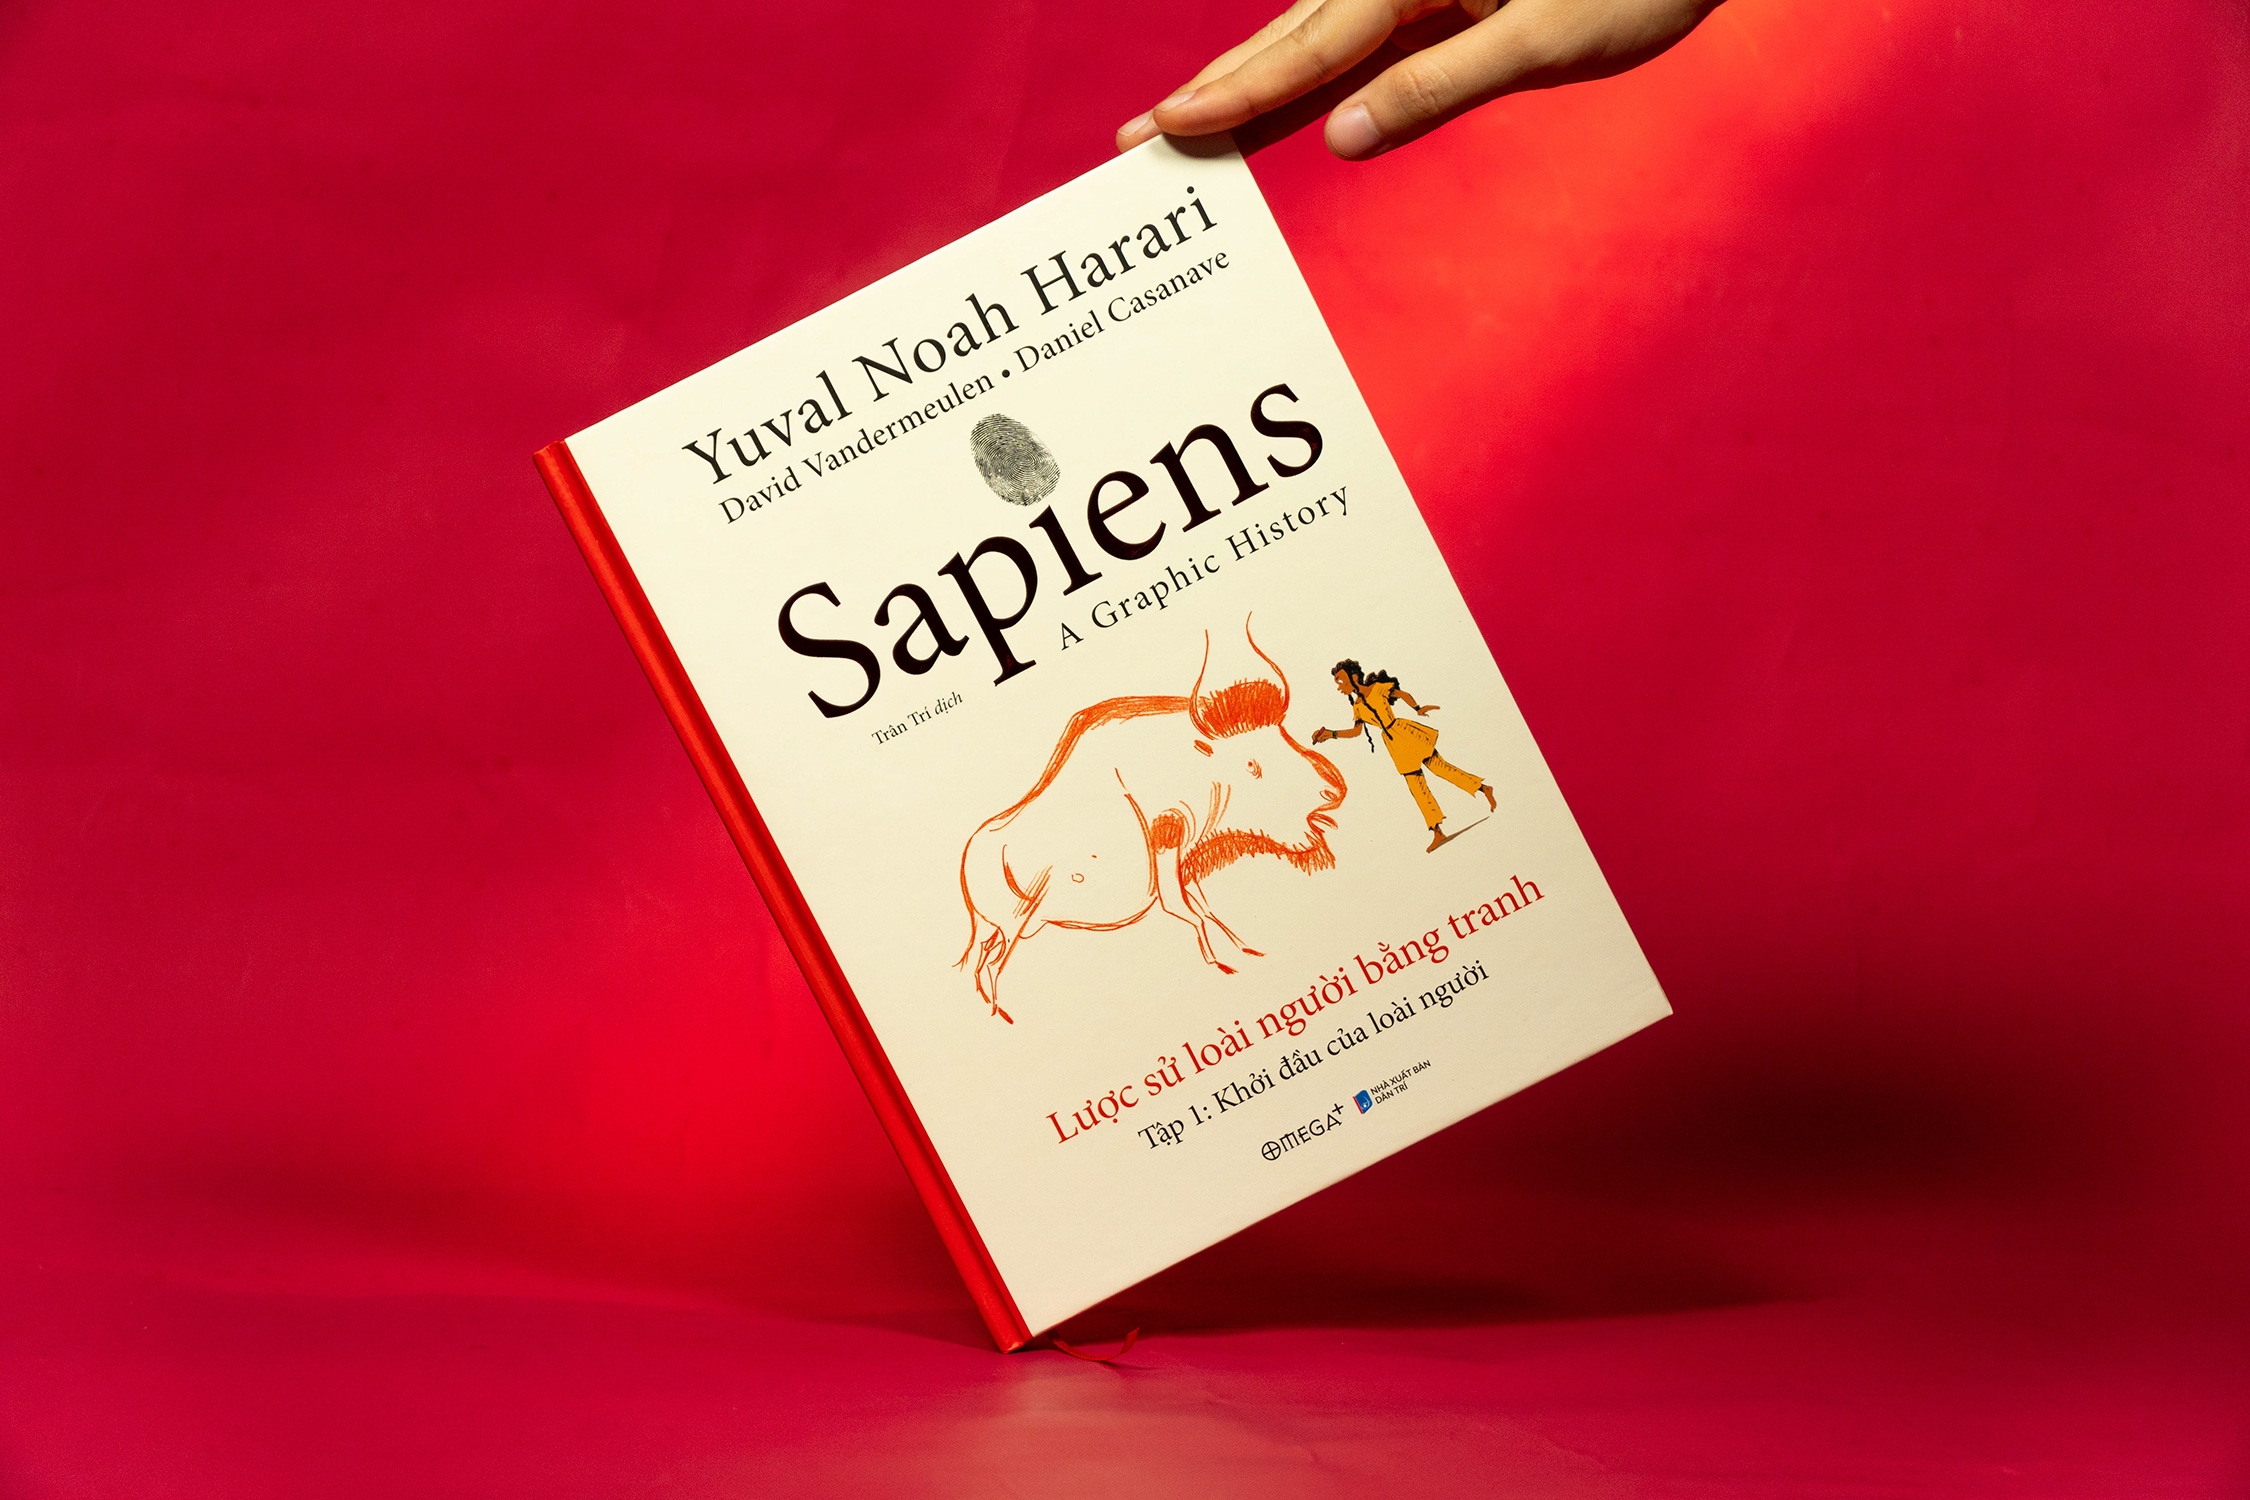 Sapiens - Lược Sử Loài Người Bằng Tranh - Tập 1: Khởi Đầu Của Loài Người